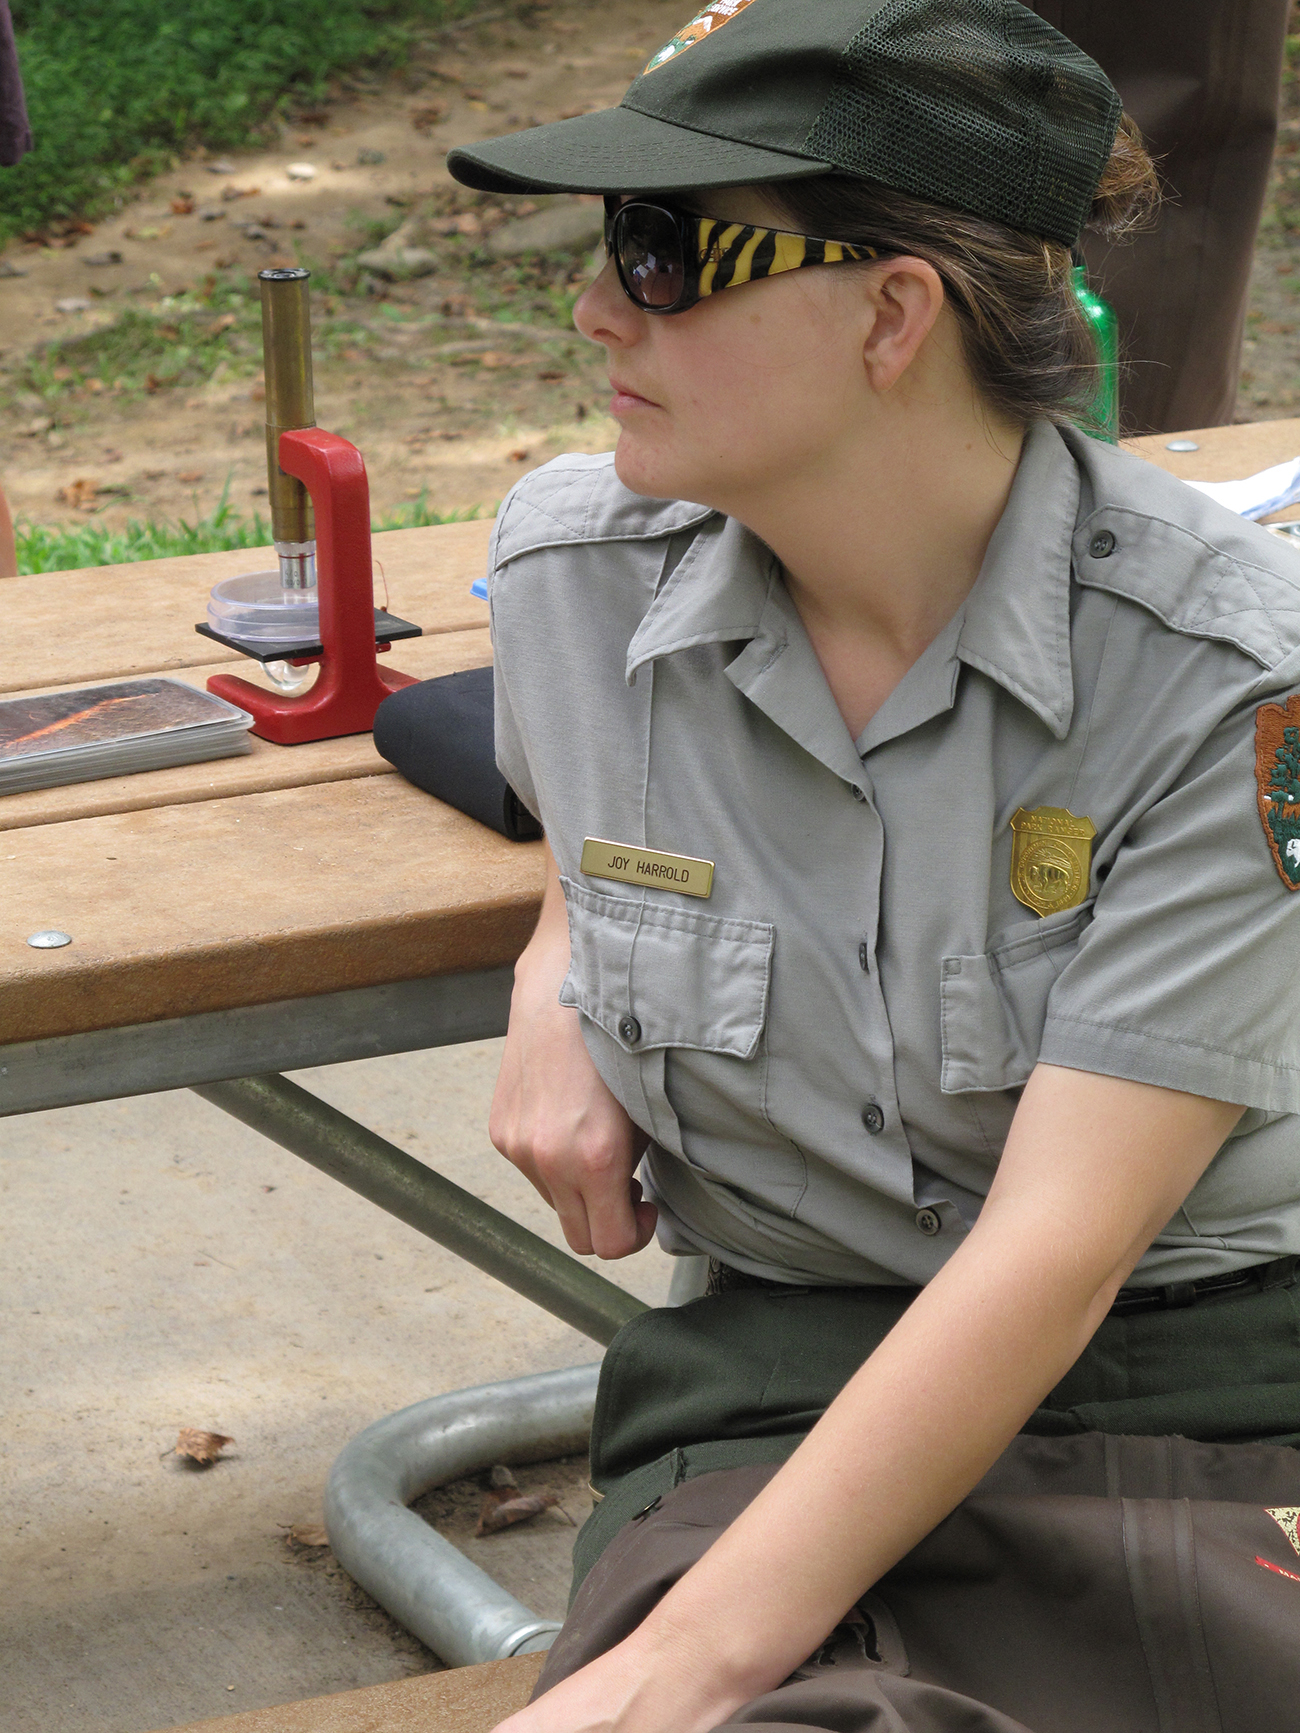 Um guarda florestal, vestindo um uniforme oficial e um distintivo, senta-se em uma mesa de piquenique do lado de fora.